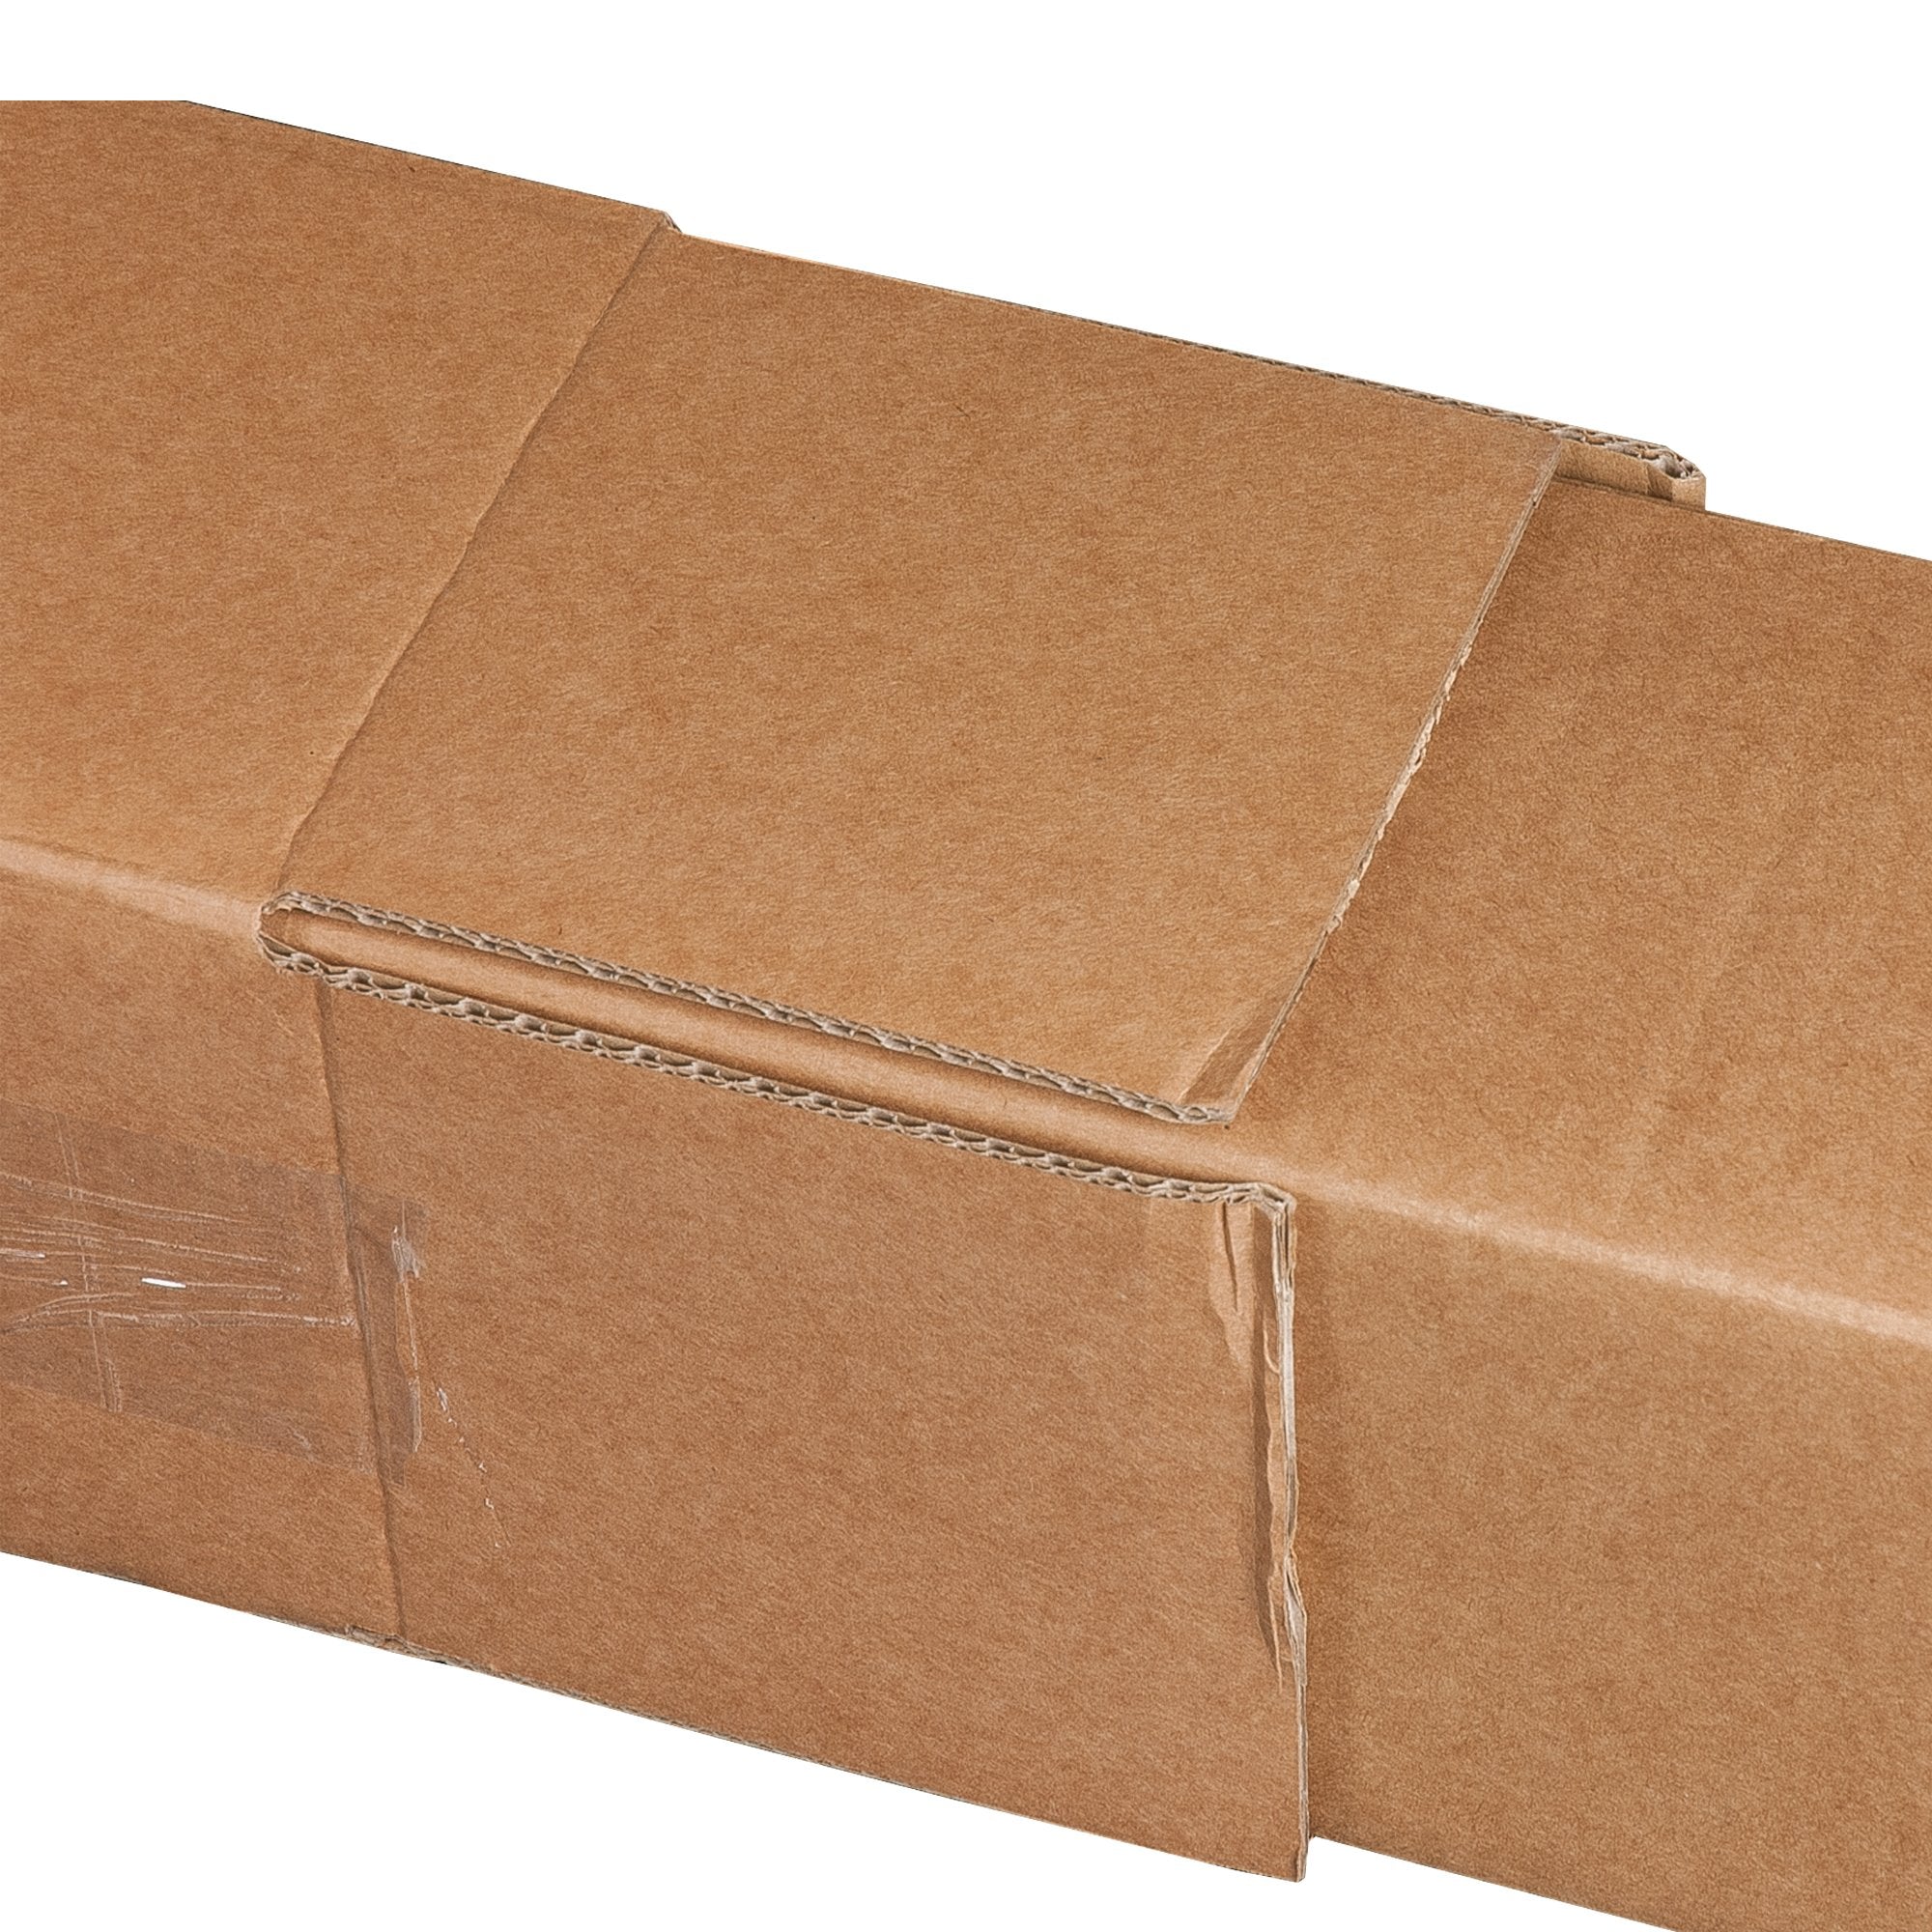 bong-packaging-10-prolunghe-telescopiche-scatole-tubo-square-box-11-2x11-2x105cm